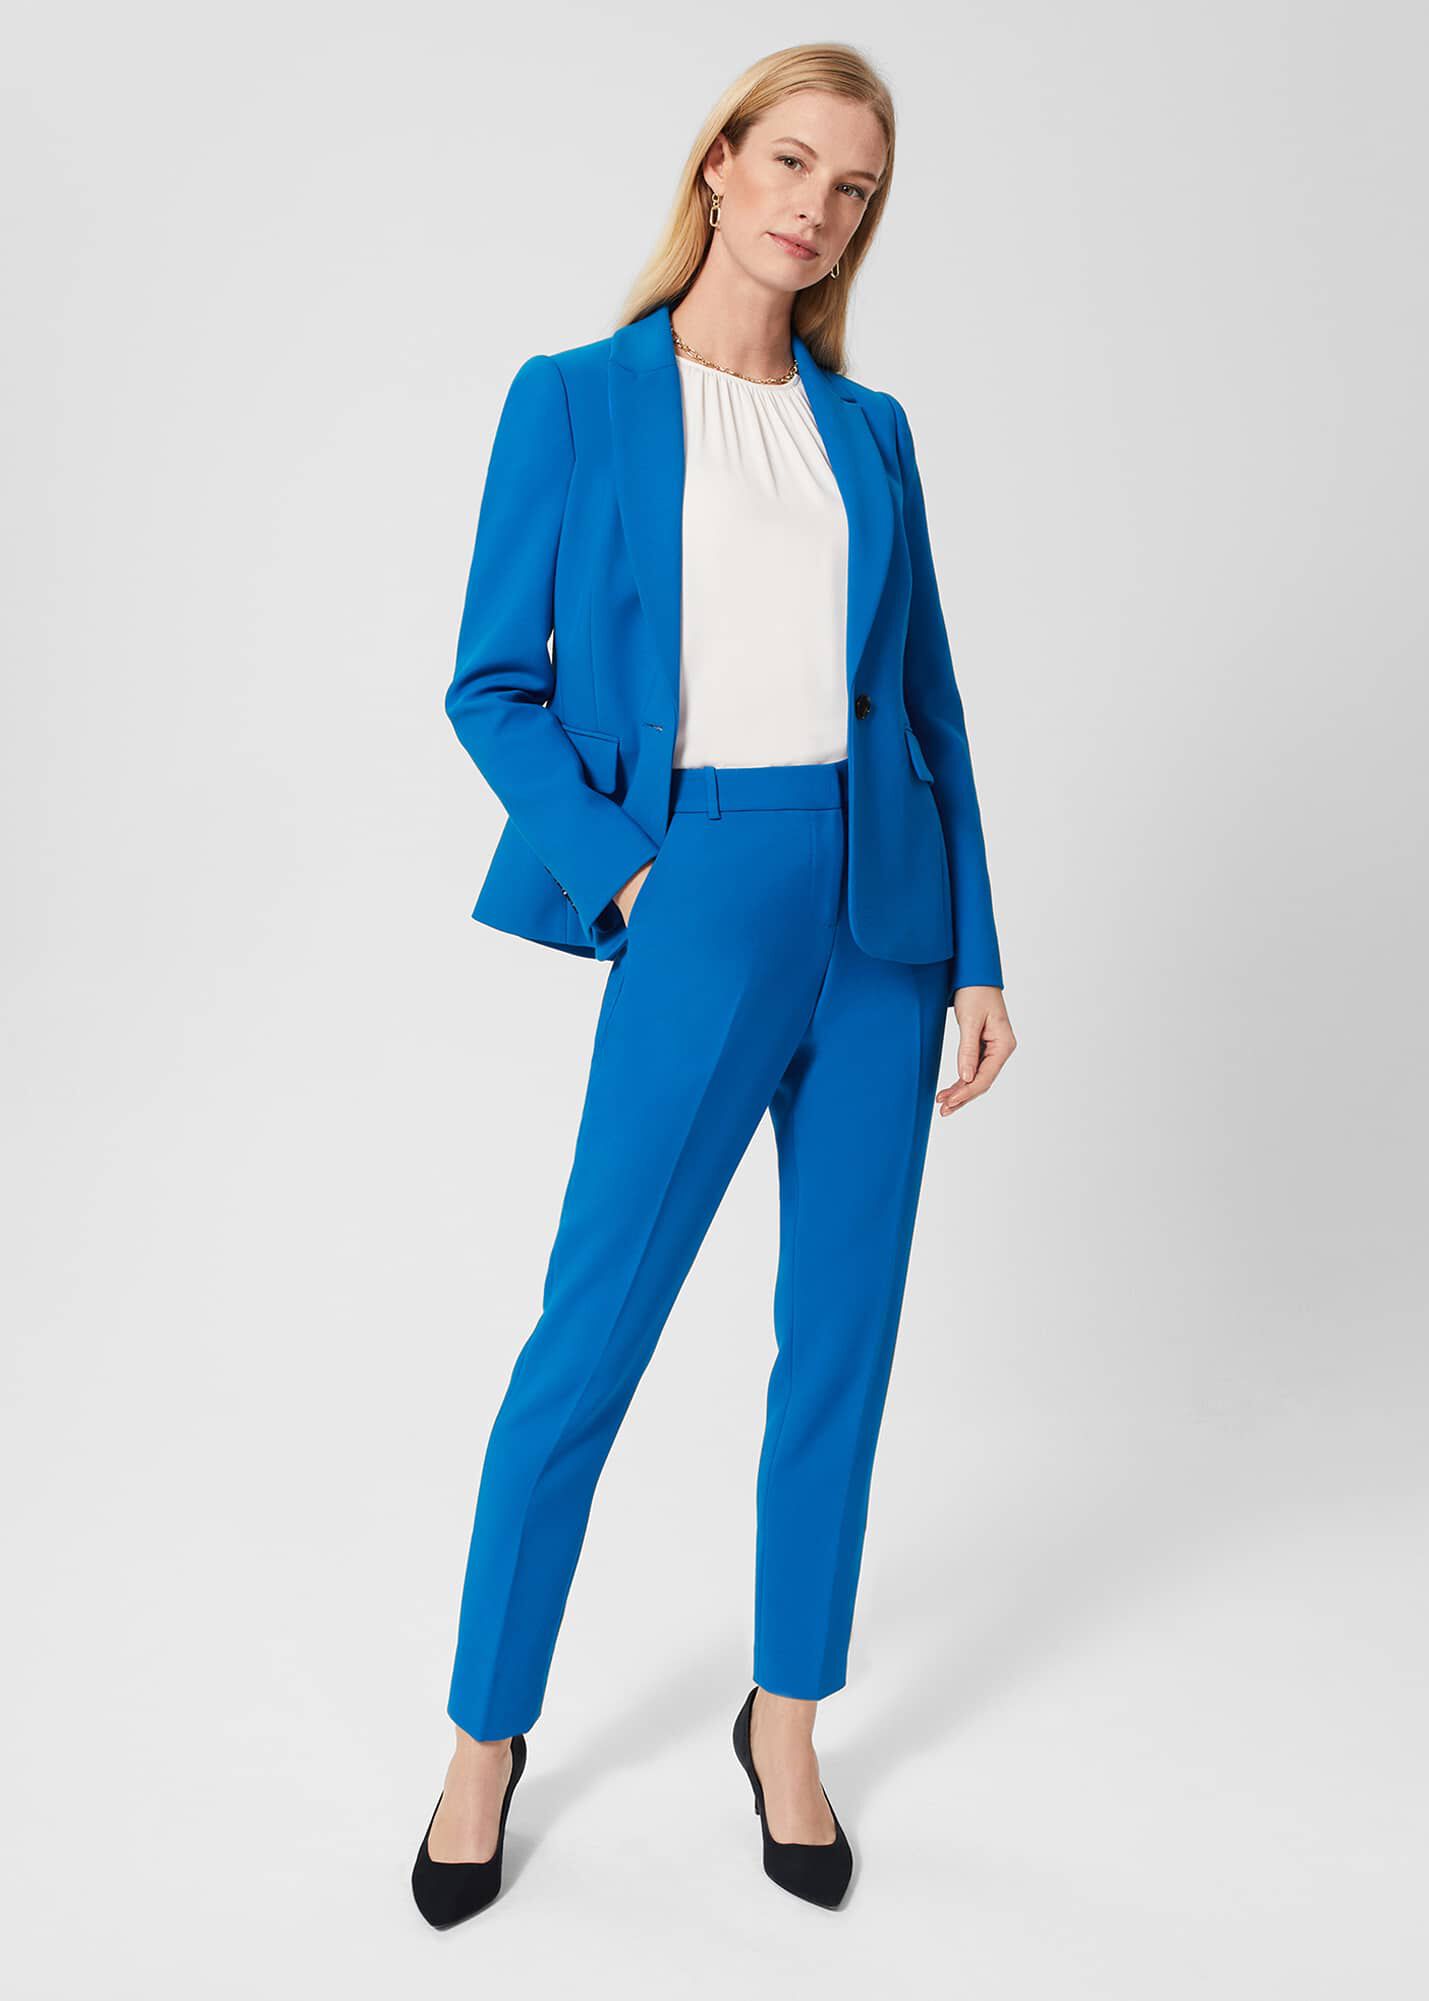 Light Blue Womens Blazer Suit, 3-piece Womens Pantsuit Set, Blue Blazer Trouser  Suit for Women, Blazer Suit Set for Ladies - Etsy